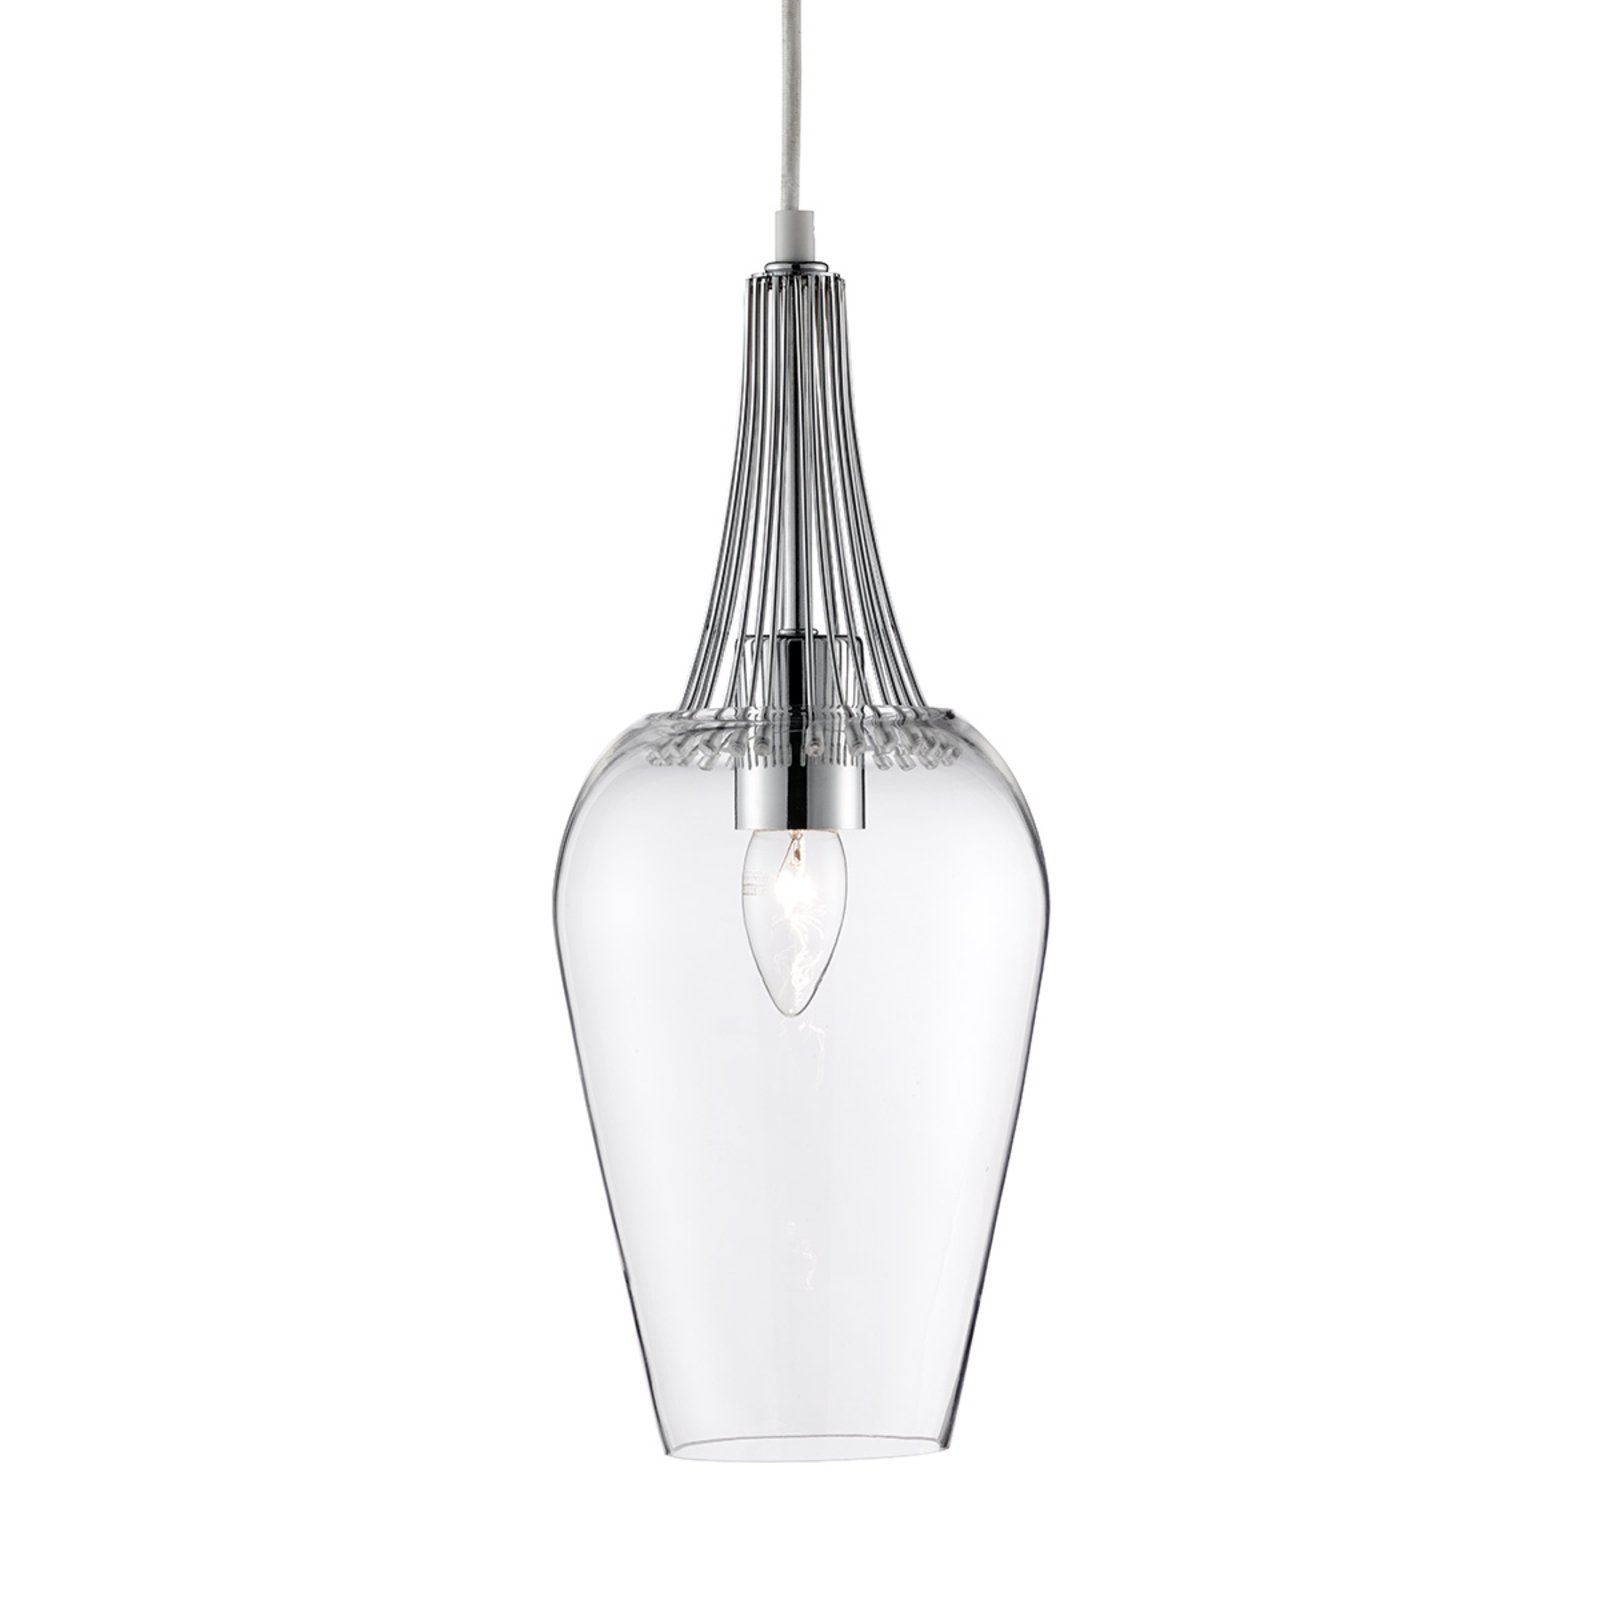 Staklena viseća svjetiljka s kromiranim elementima